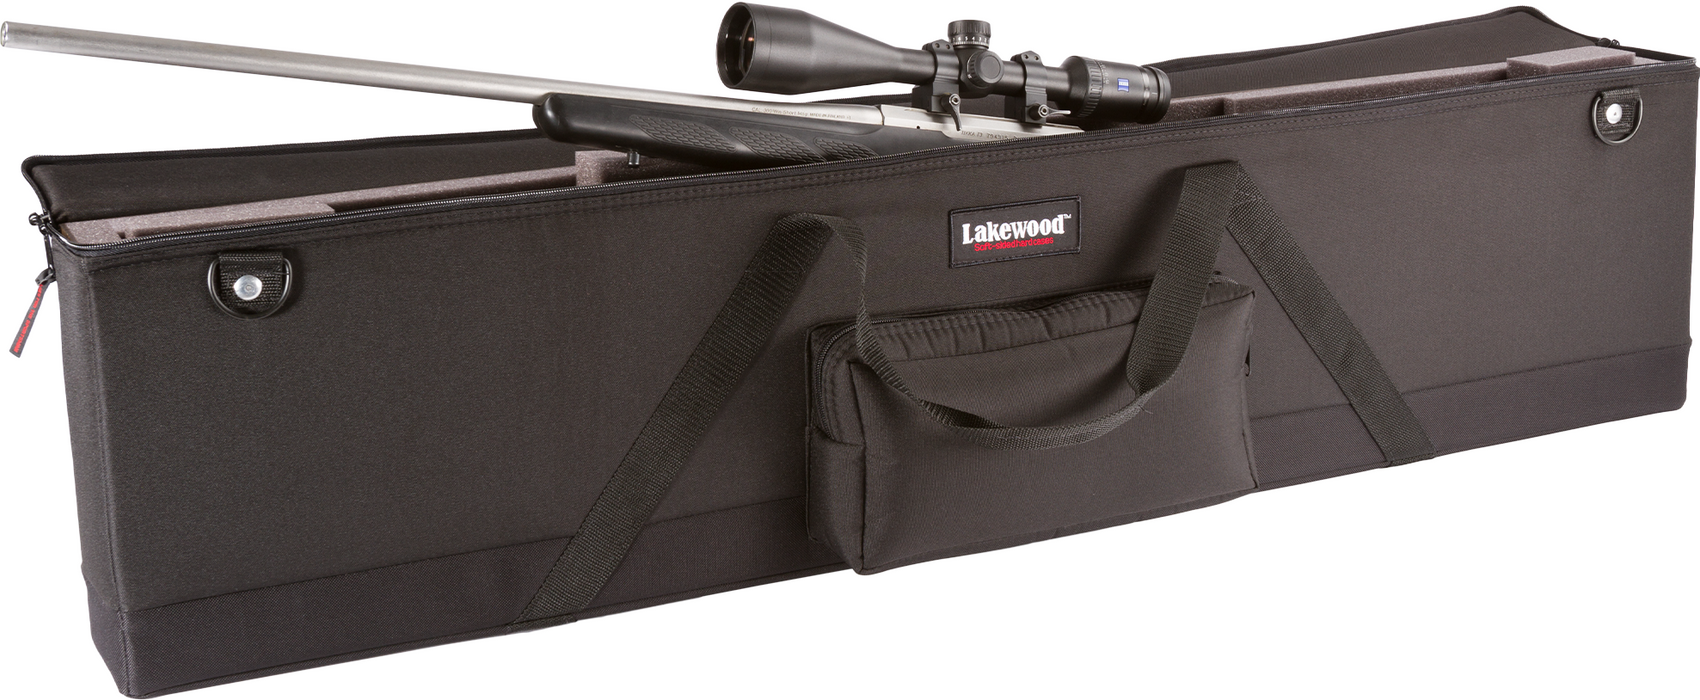 Lakewood Single Scoped Rifle or Shotgun Case Long - Black